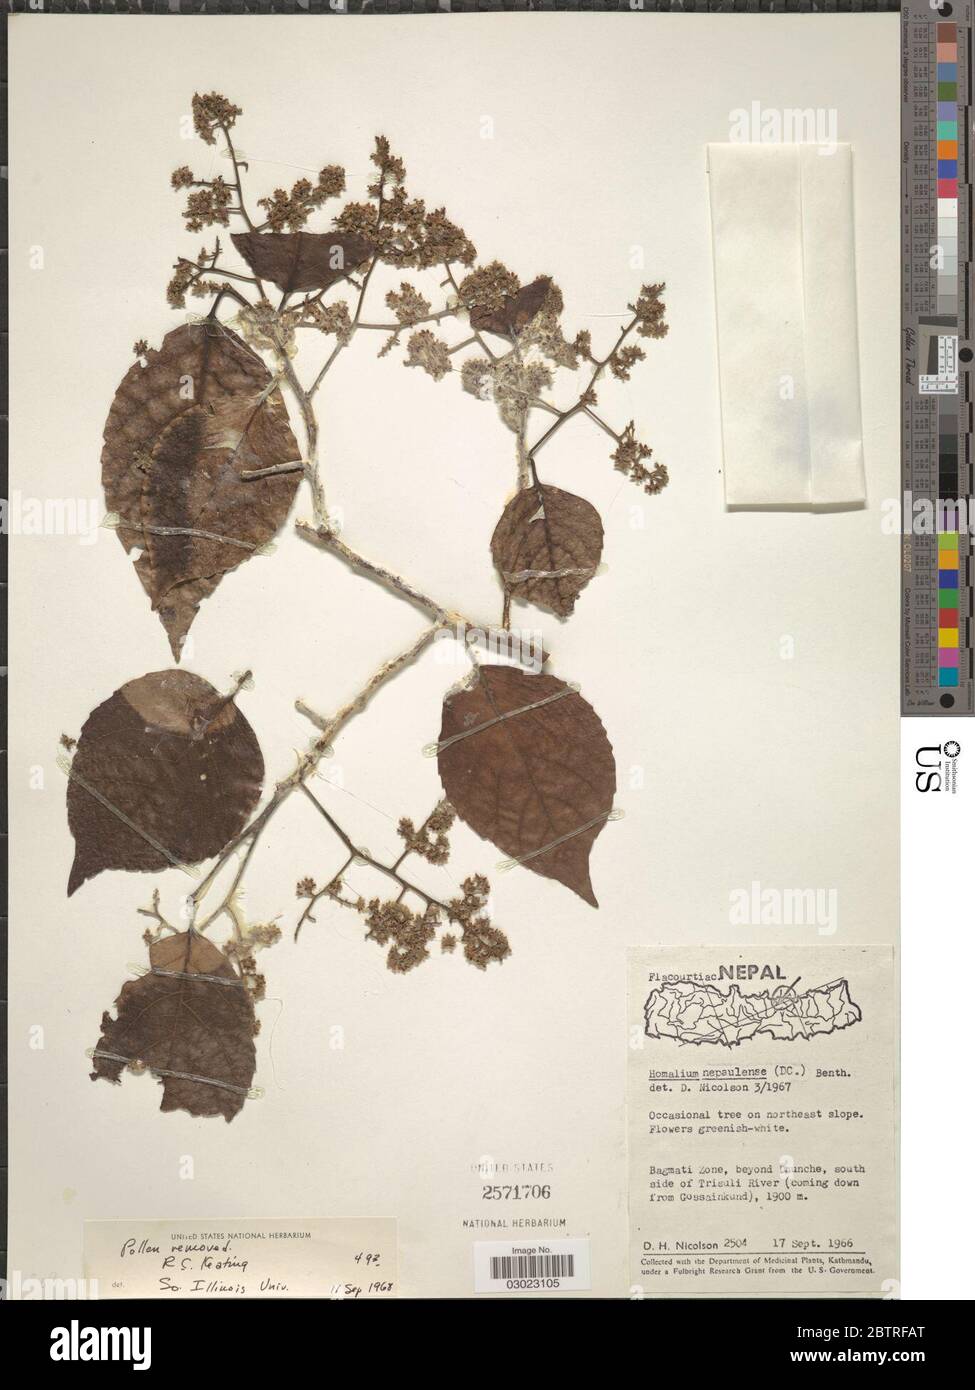 Homalium nepalense Benth. Stock Photo